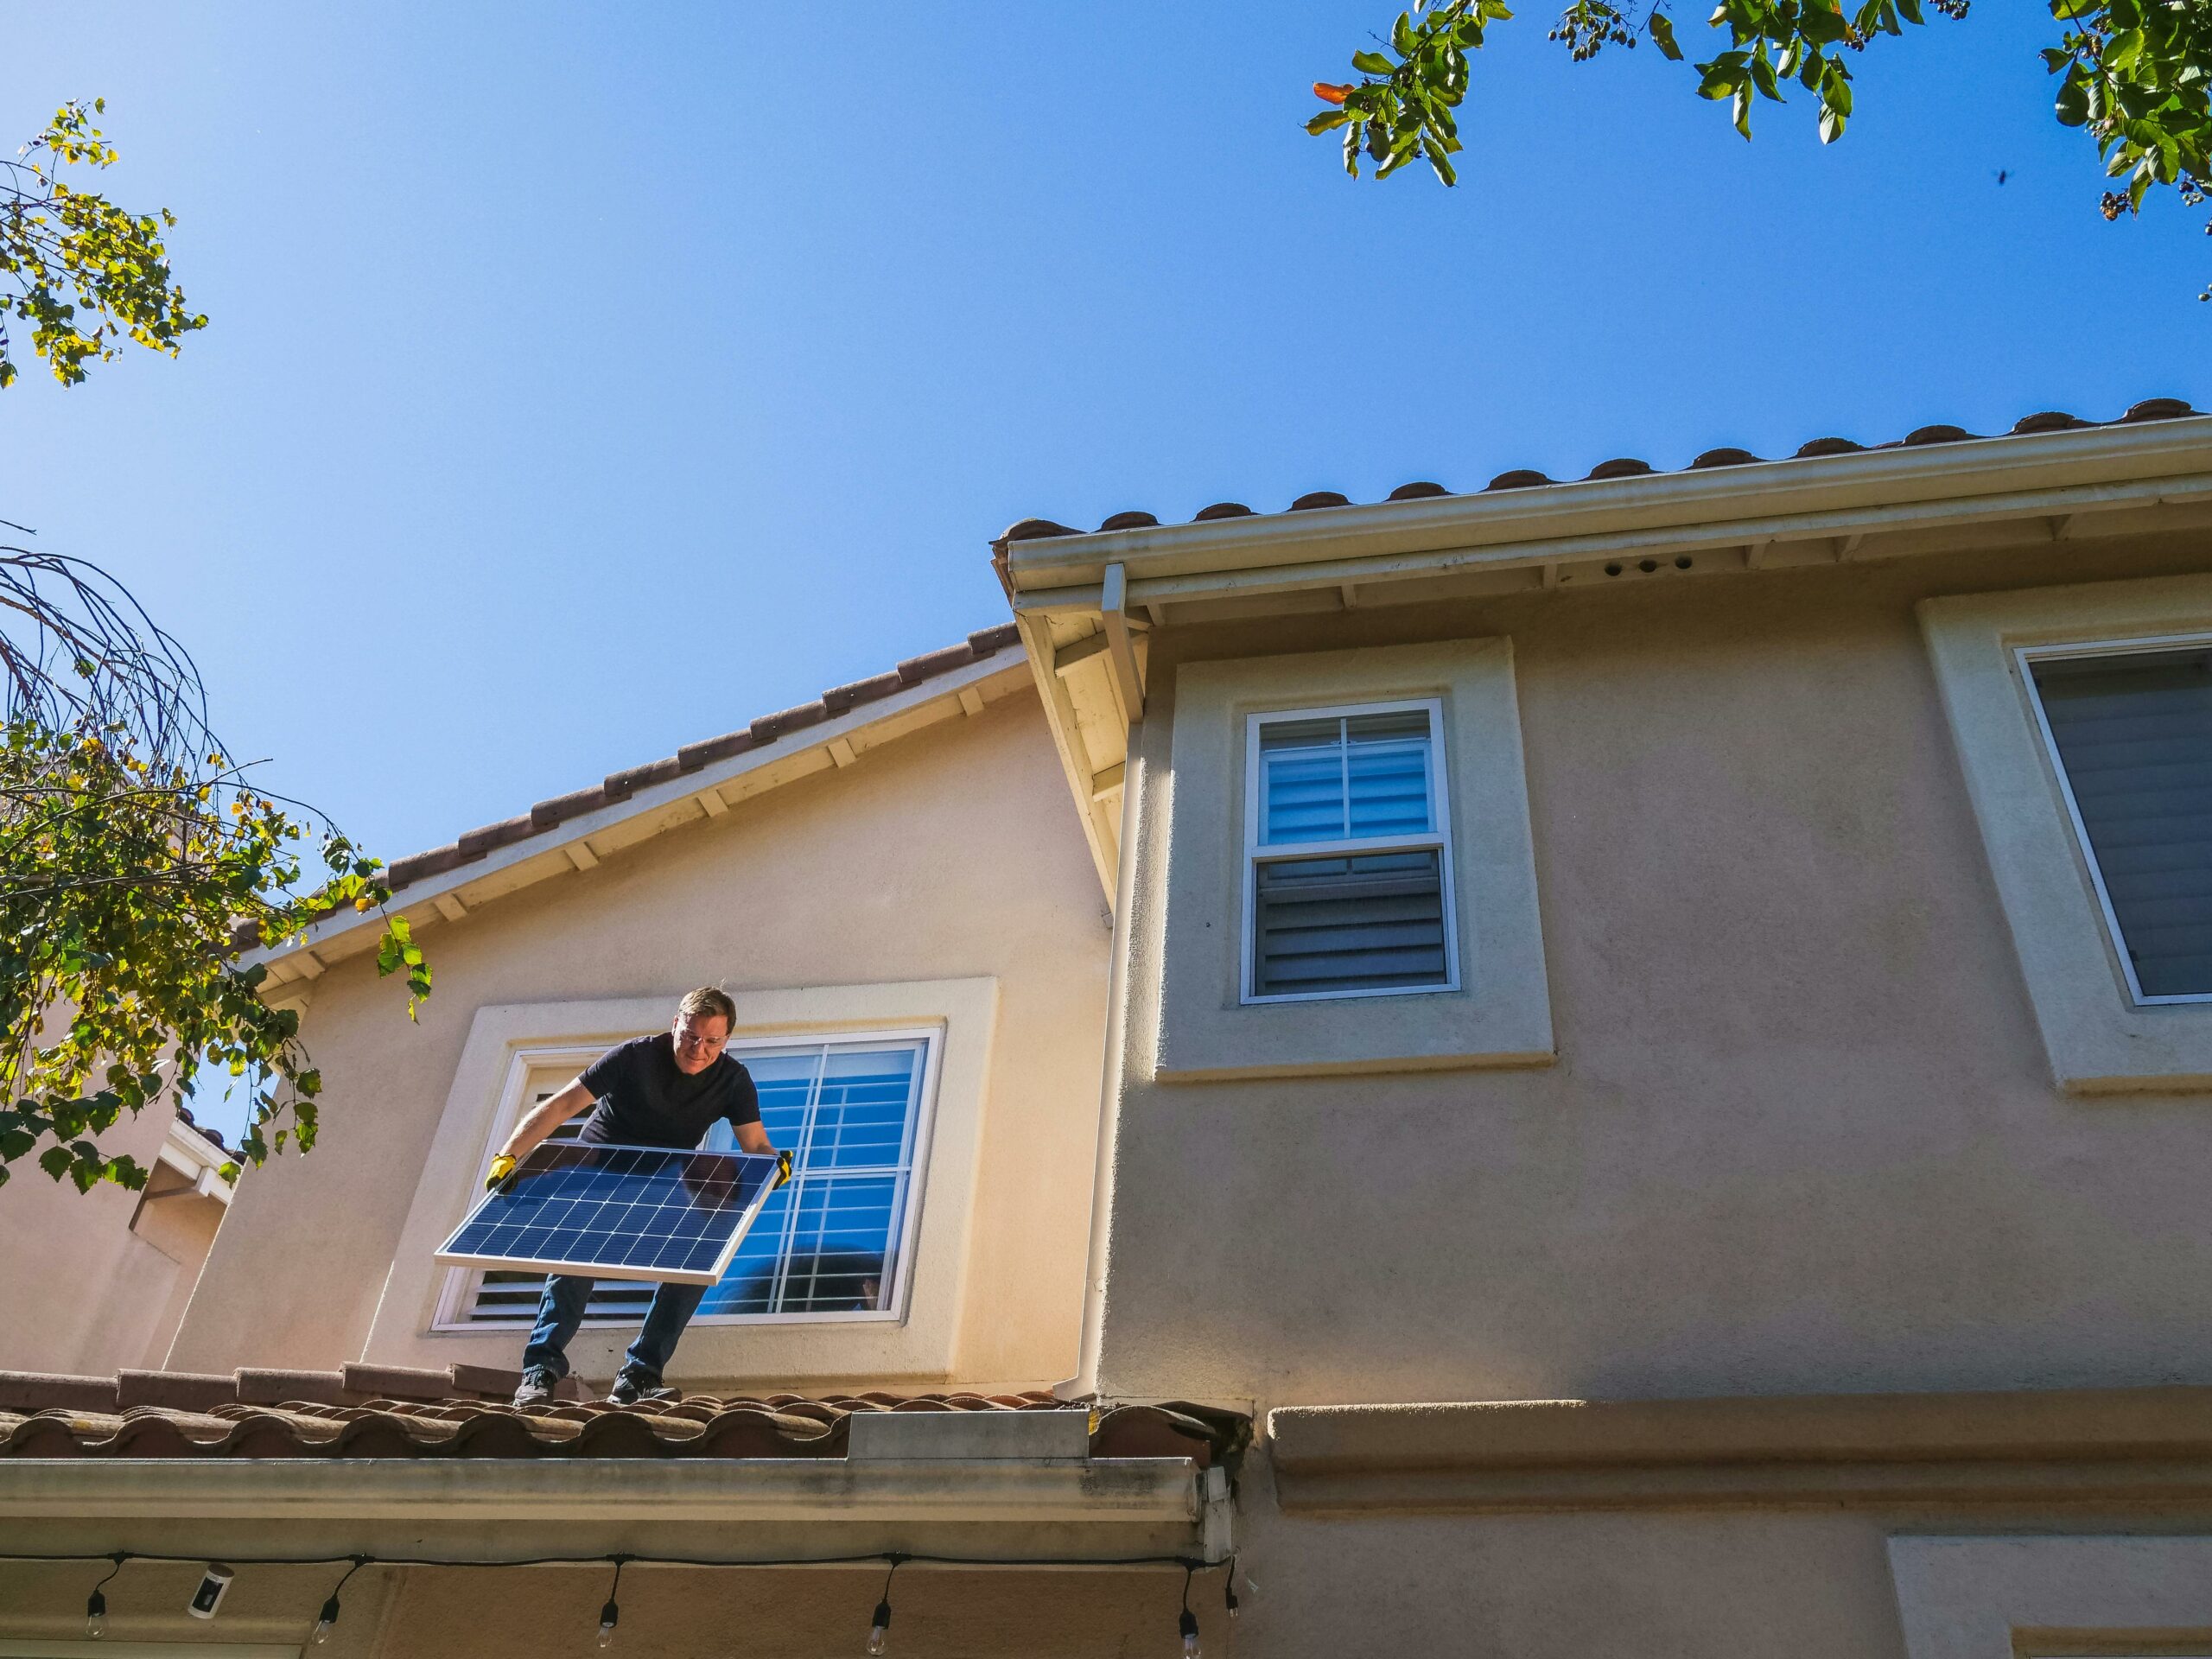 Un homme installe des panneaux solaires sur le toit d'une maison, illustrant l'engagement envers les énergies renouvelables.